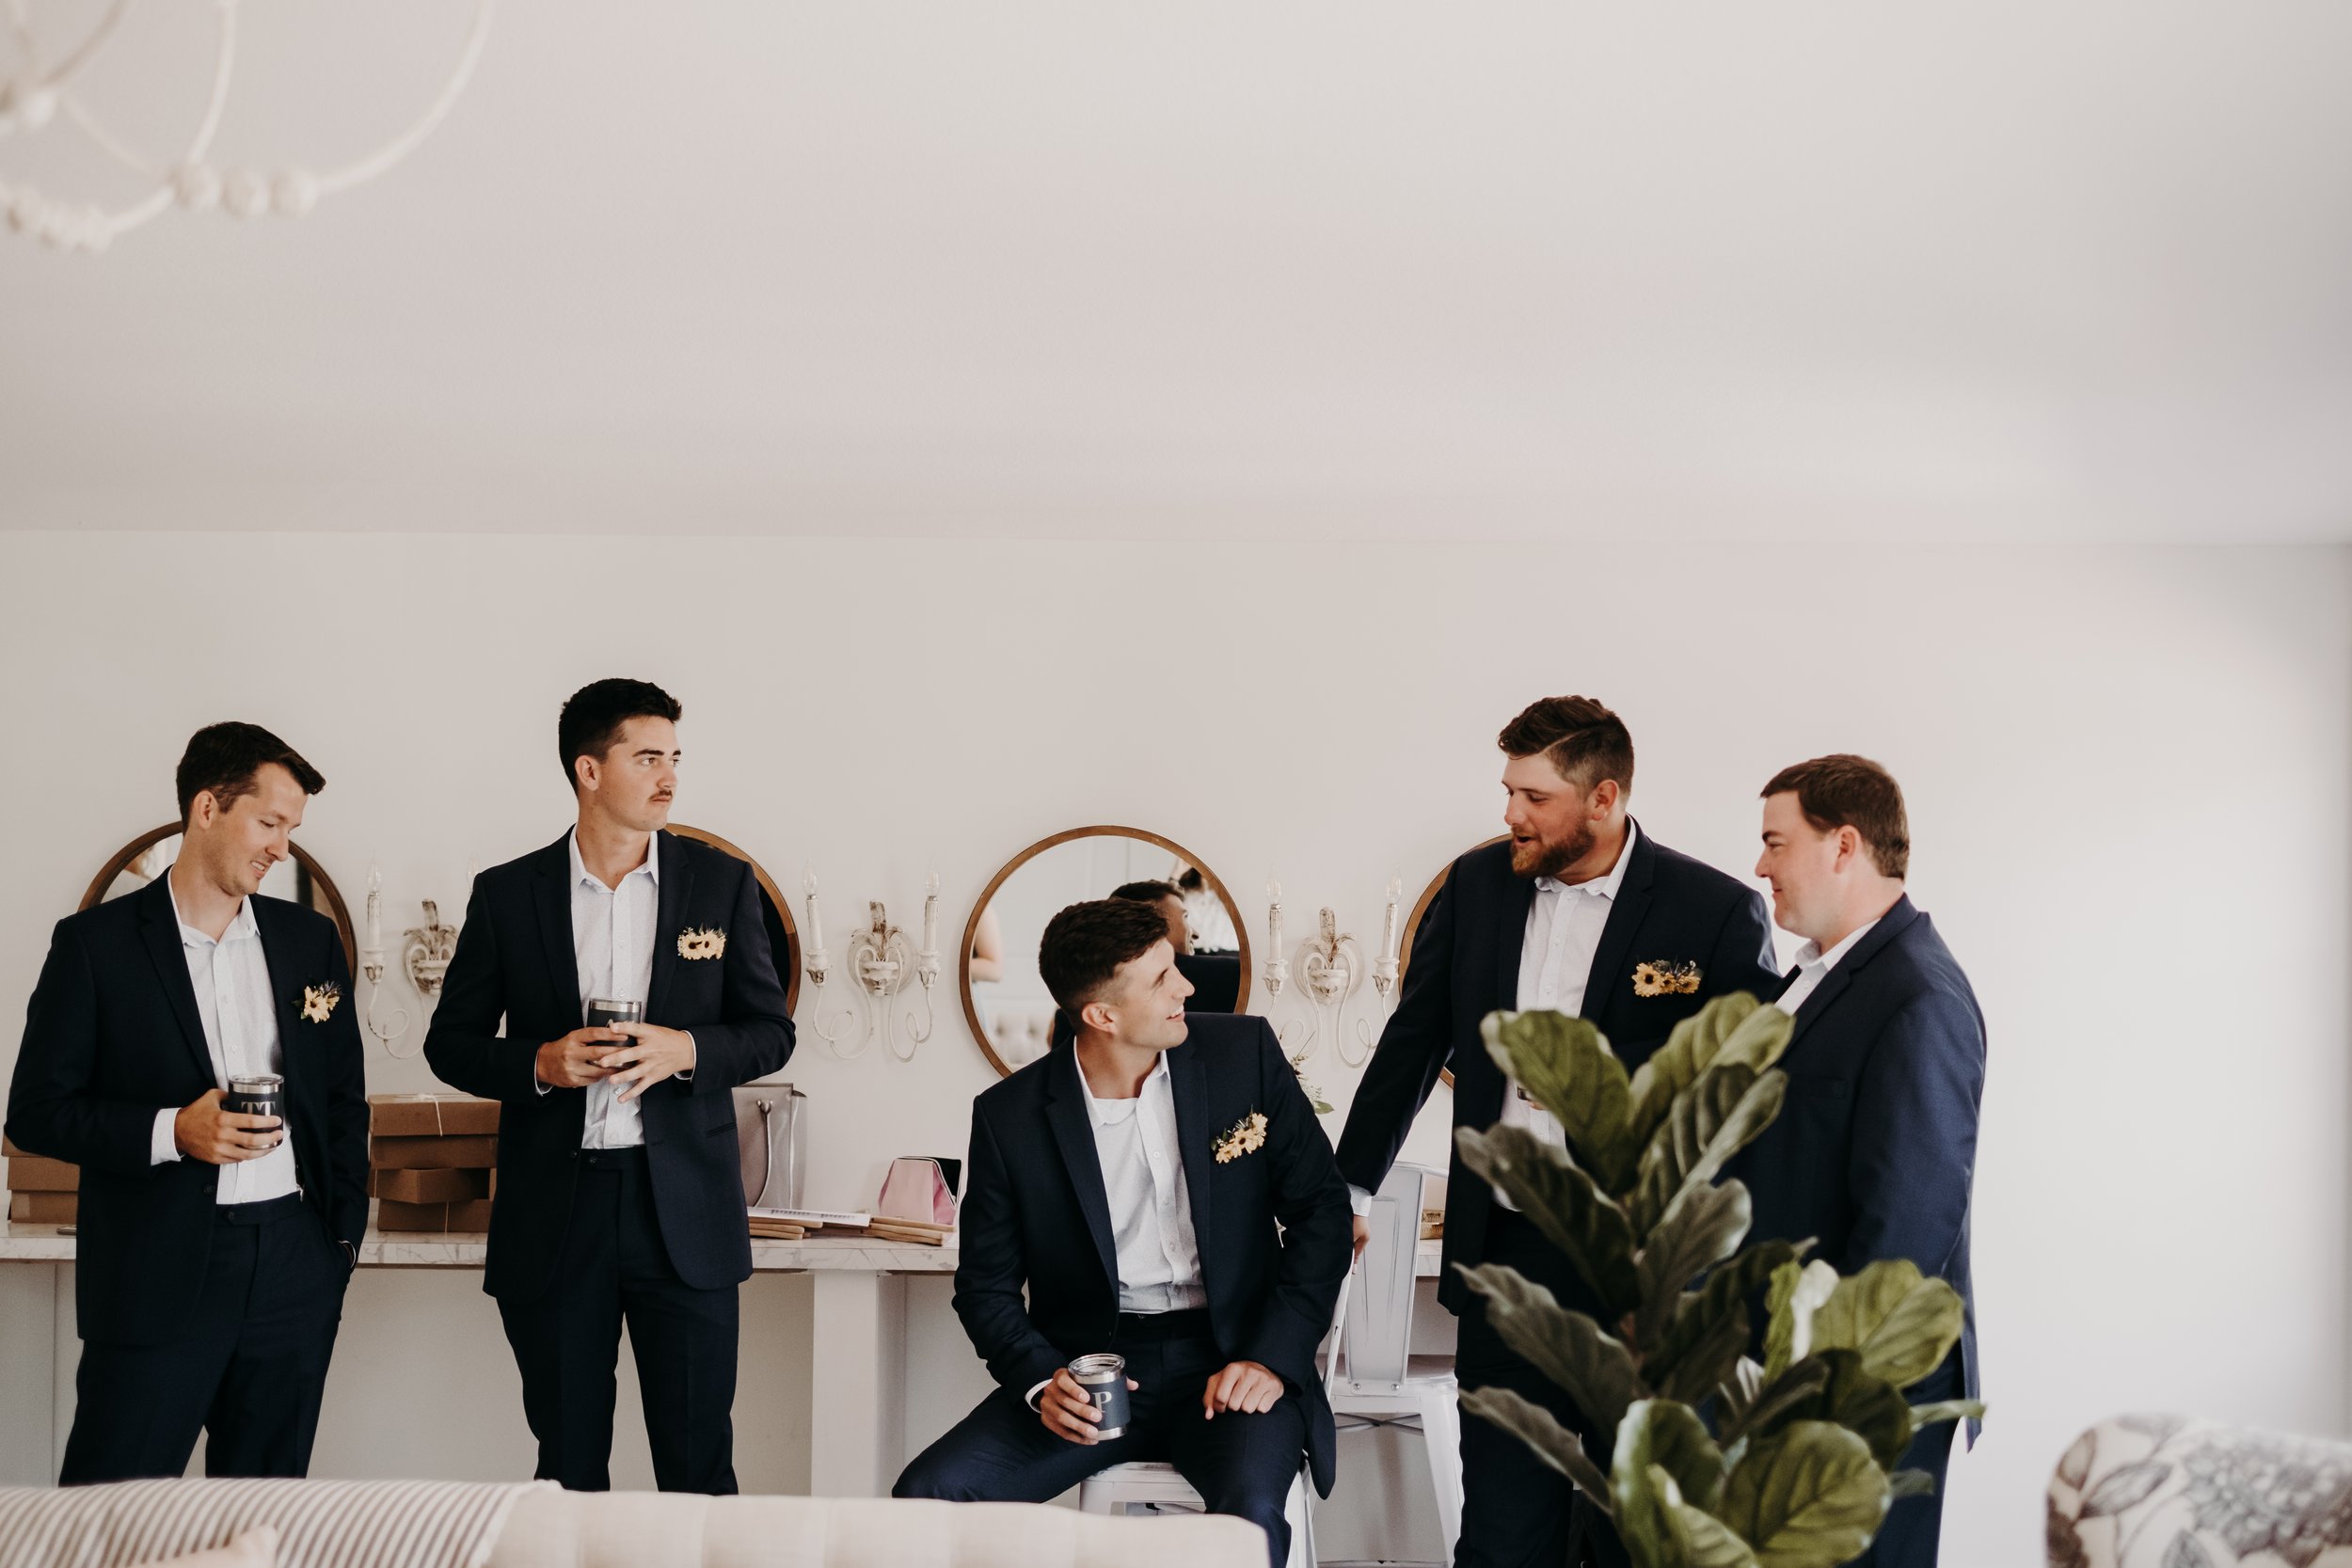 groomsmen-cocktail-hour-in-bridal-suite.jpeg